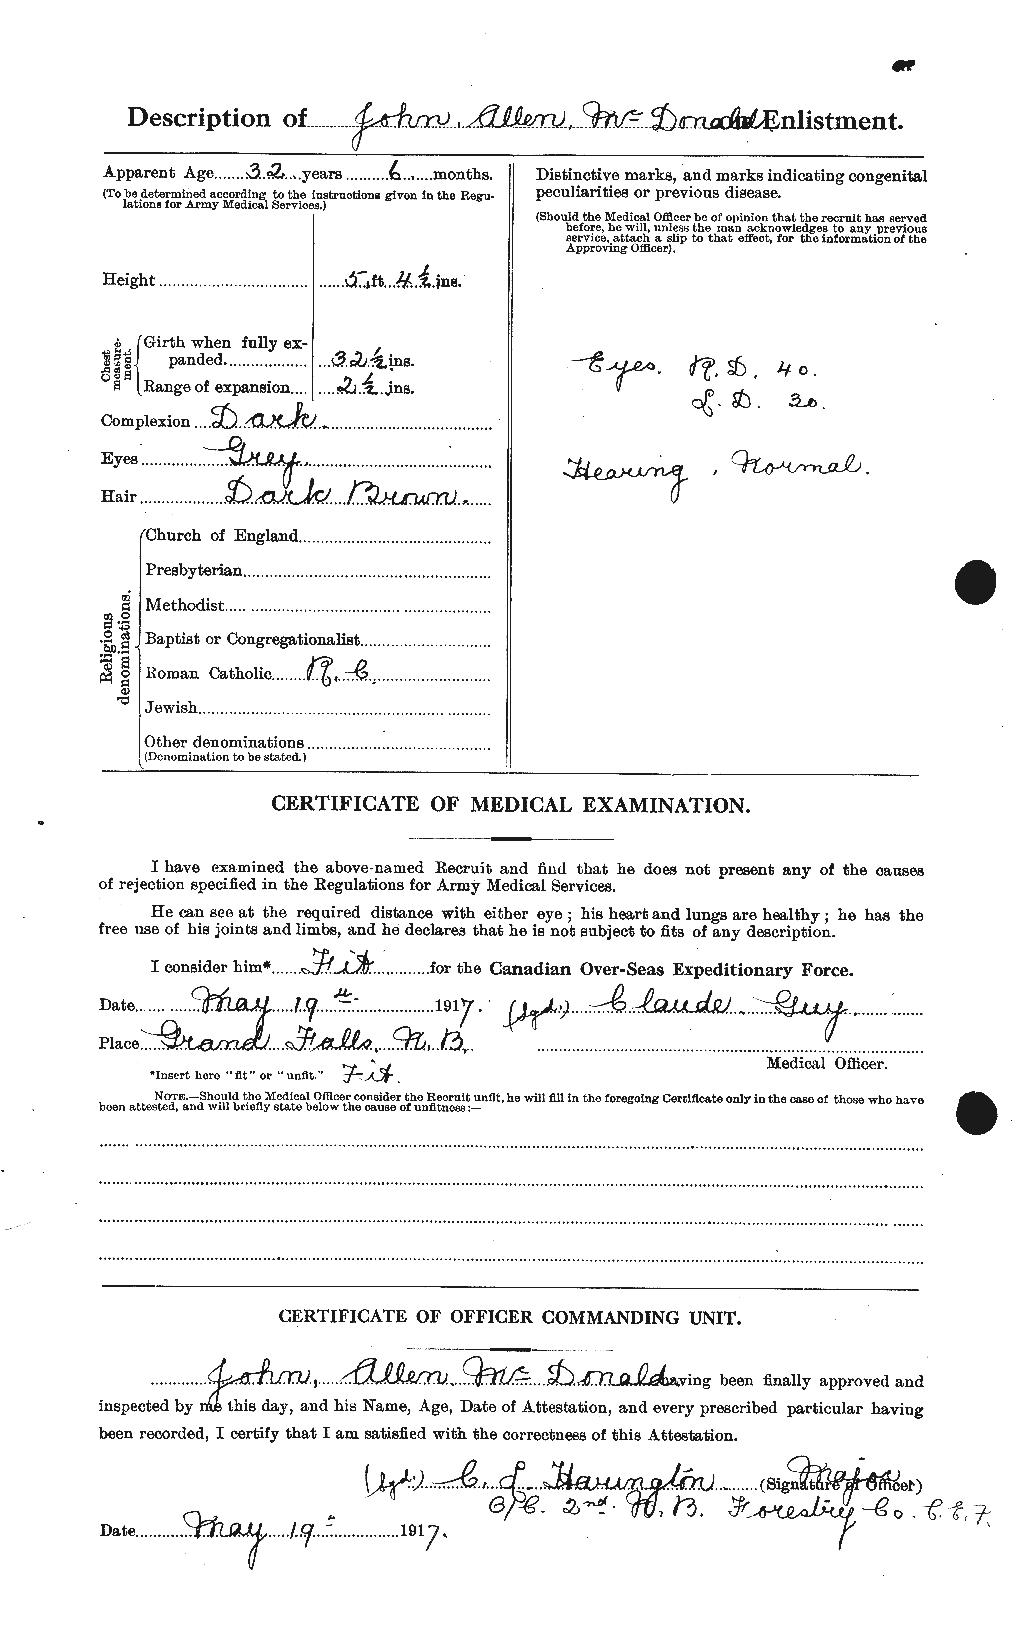 Dossiers du Personnel de la Première Guerre mondiale - CEC 516521b